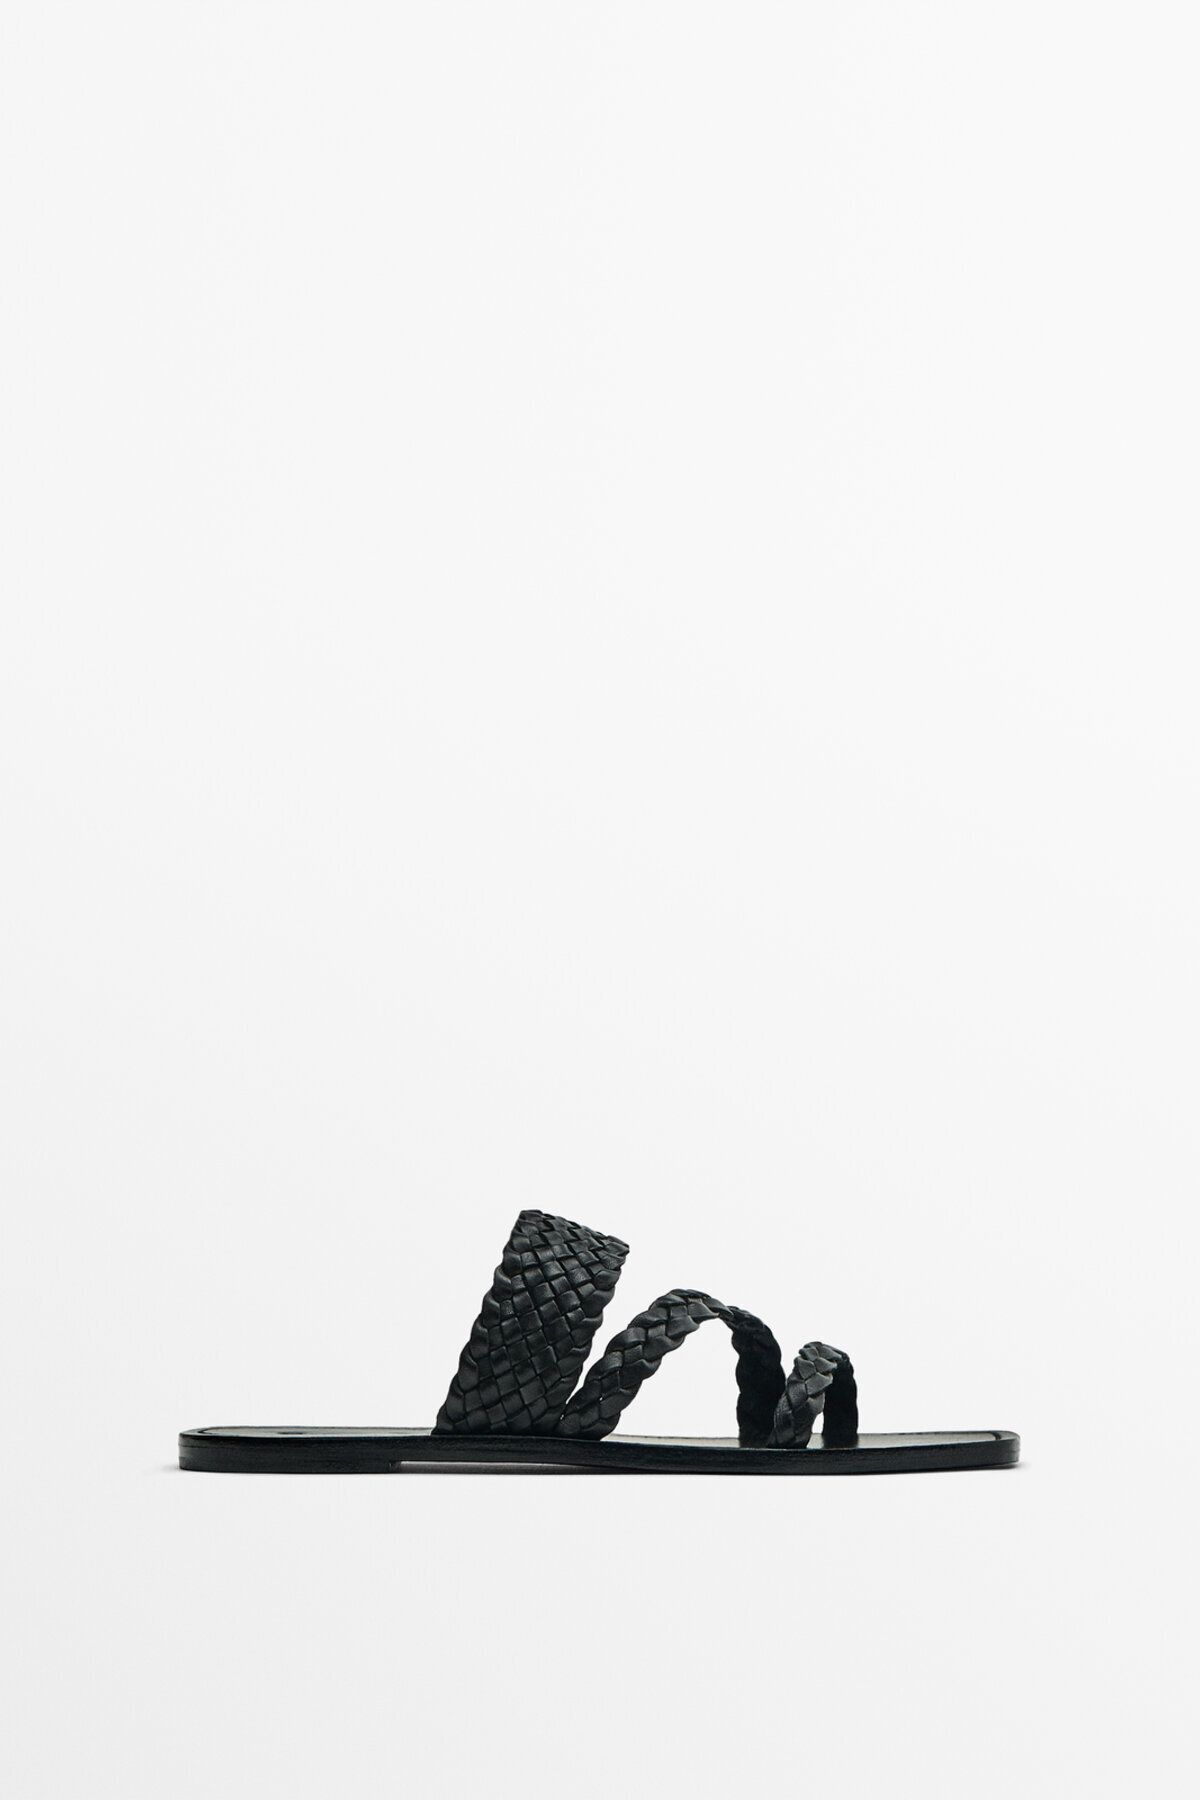 Massimo Dutti Örgü bantlı düz sandalet